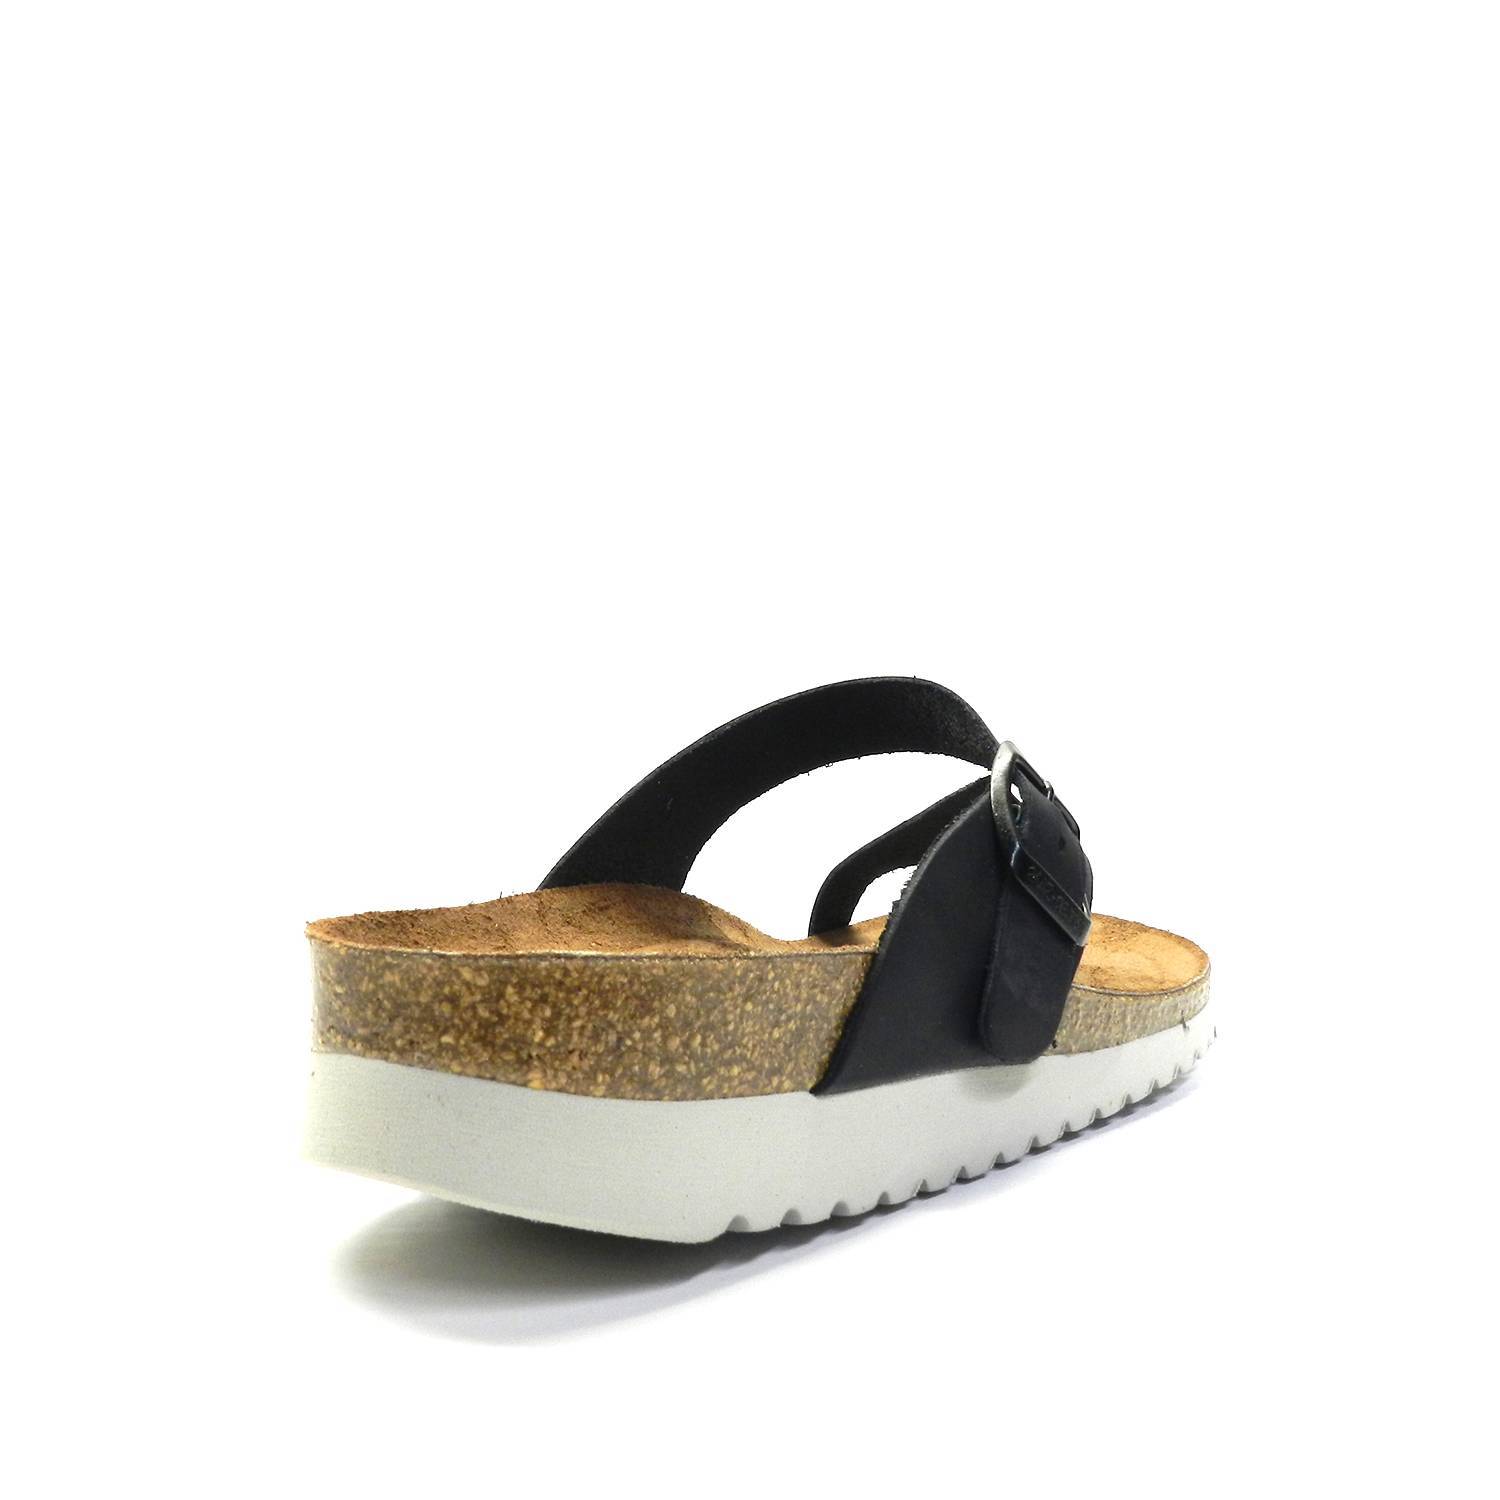 Sandalia de la marca Interbios, modelo 7119 en color negro. Sandalia de piel tipo esclava con cierre de hebilla en el empeine. Suela de goma de gran comodidad.